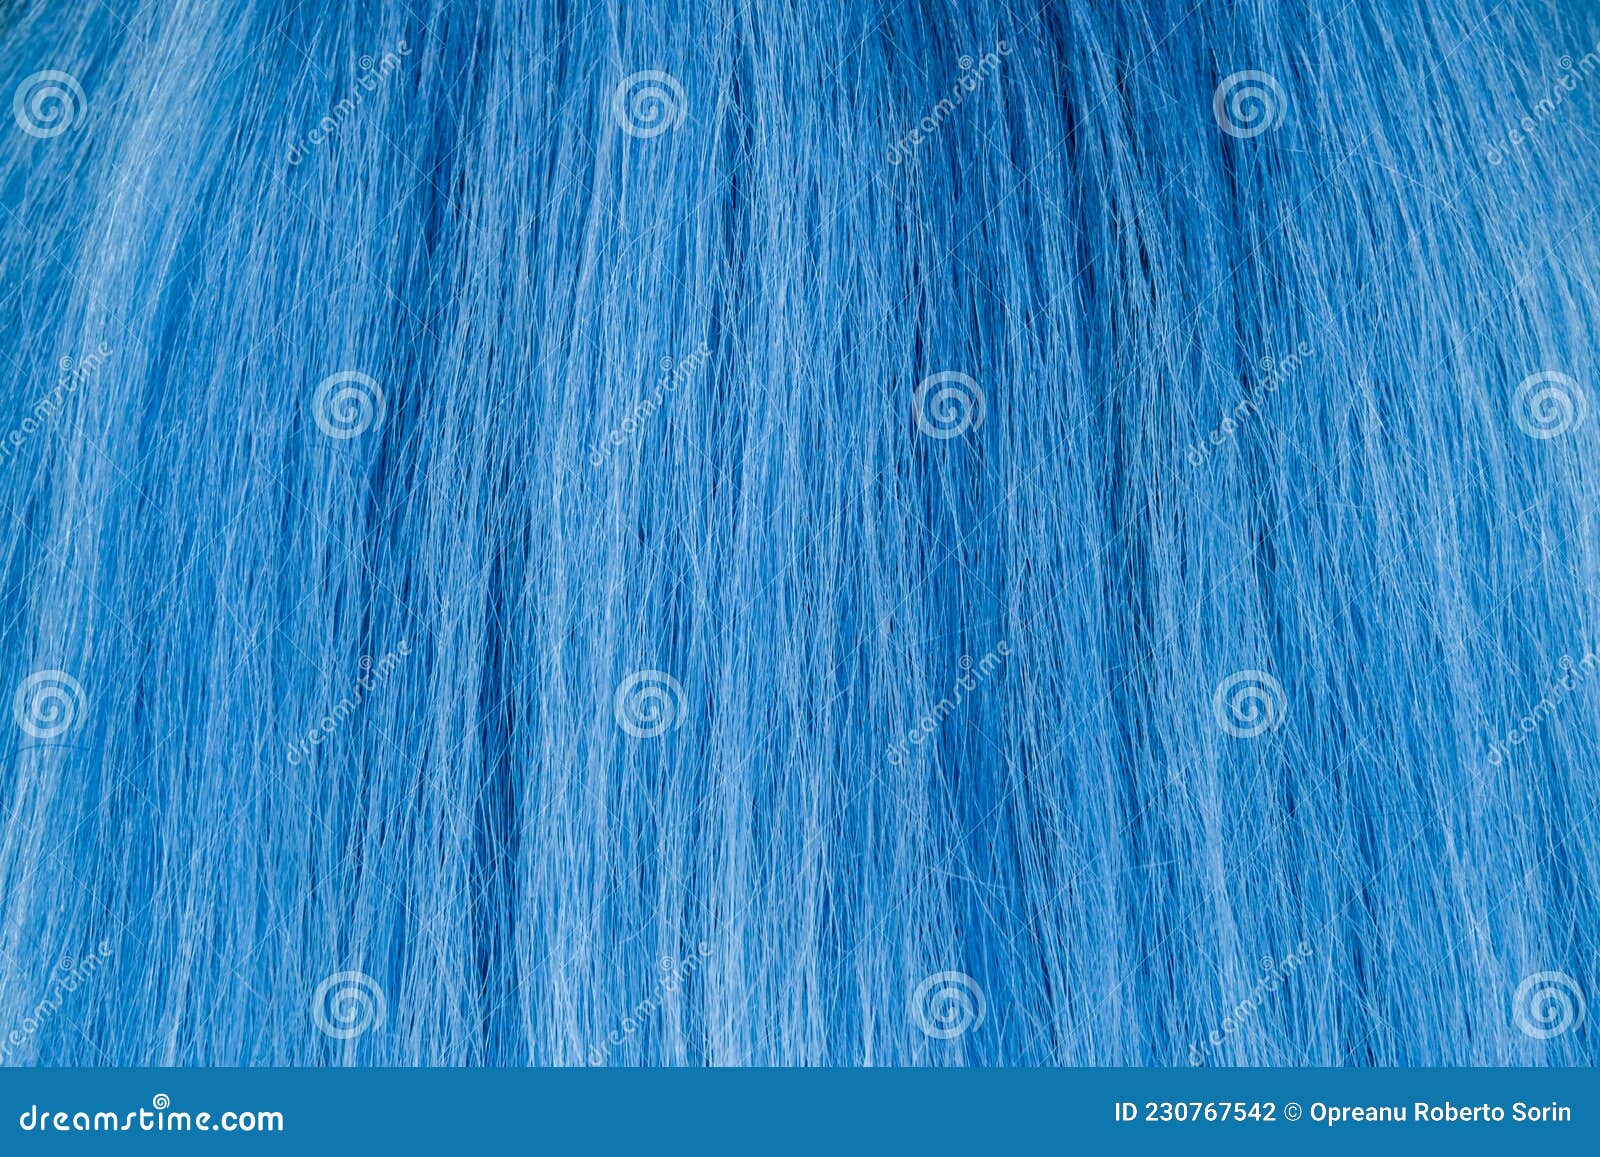 Blue Hair Texture - wide 4